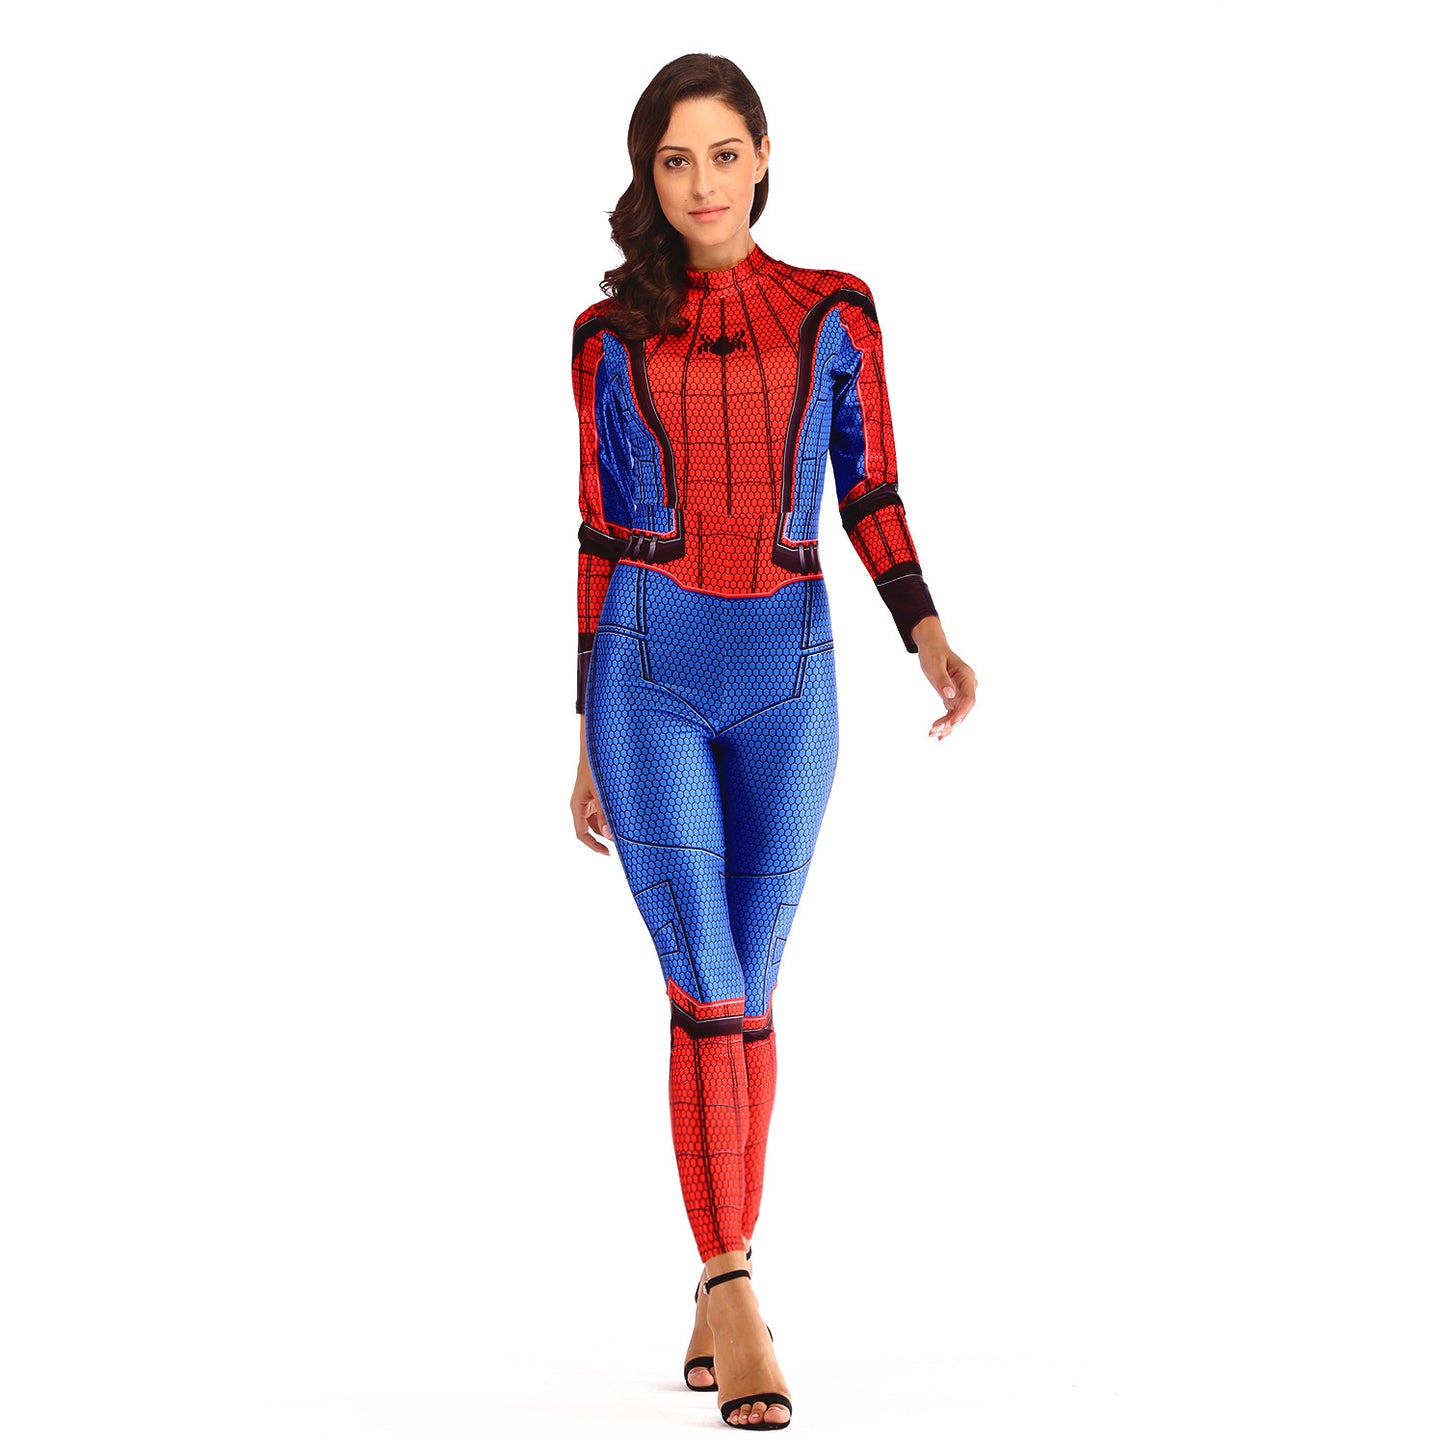 Ladies Spiderman Bodysuit Costume